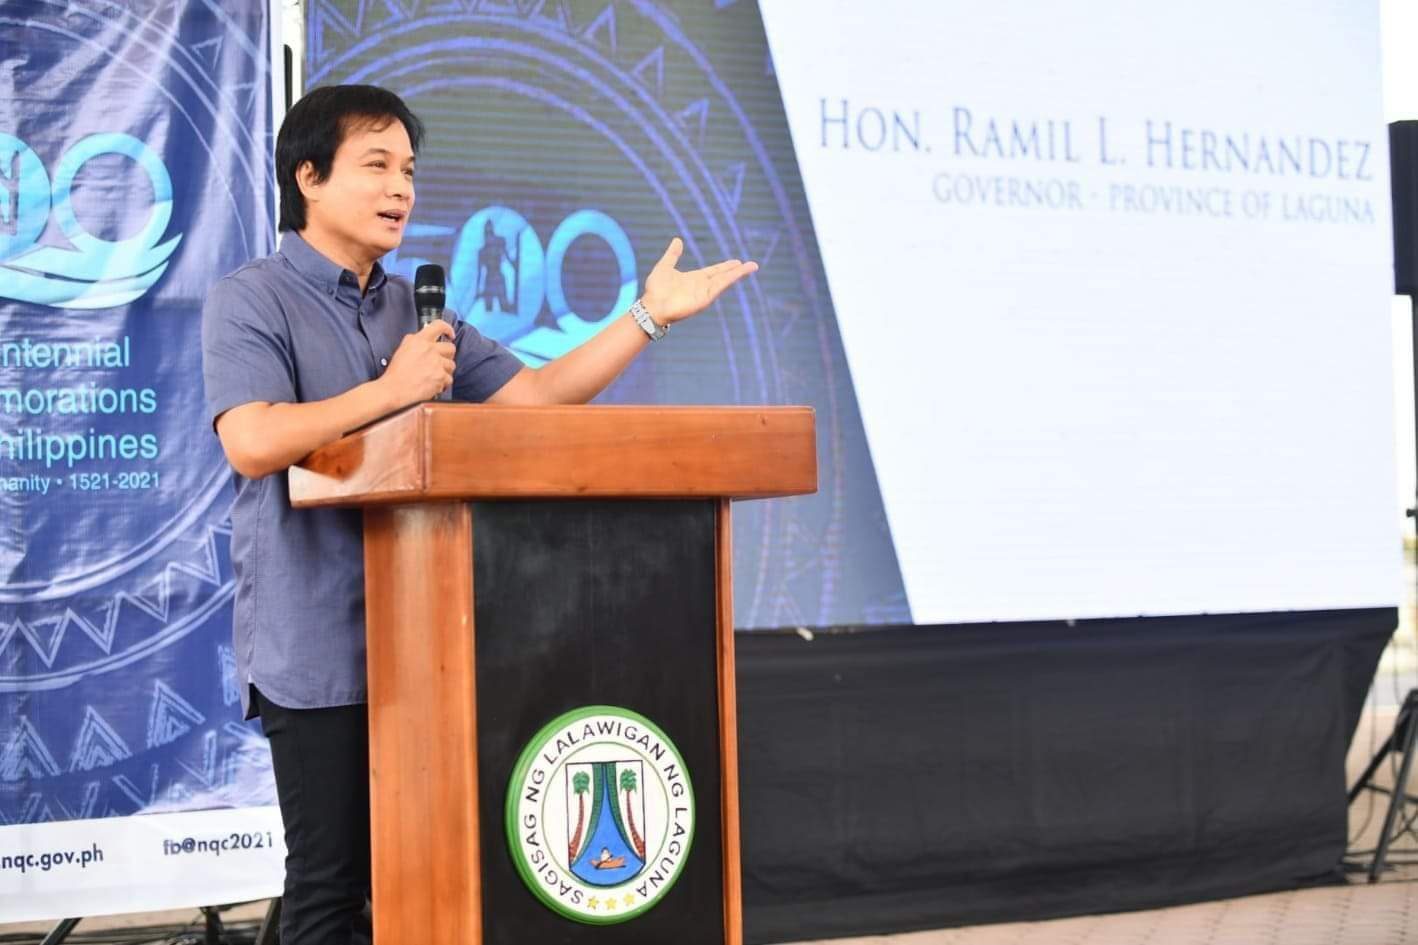 Laguna Governor Ramil Hernandez tests positive for COVID-19